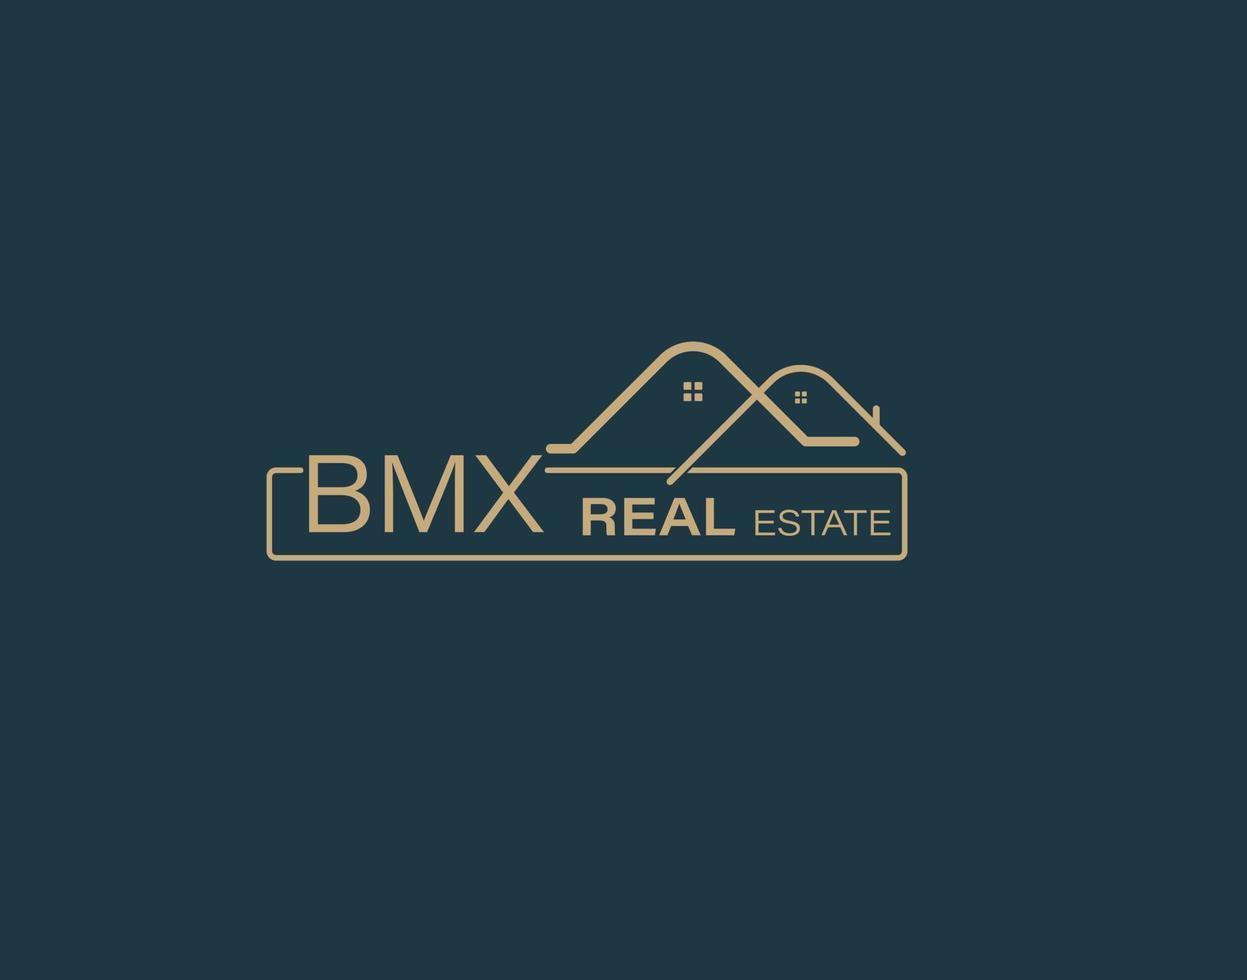 bmx real inmuebles y consultores logo diseño vectores imágenes lujo real inmuebles logo diseño